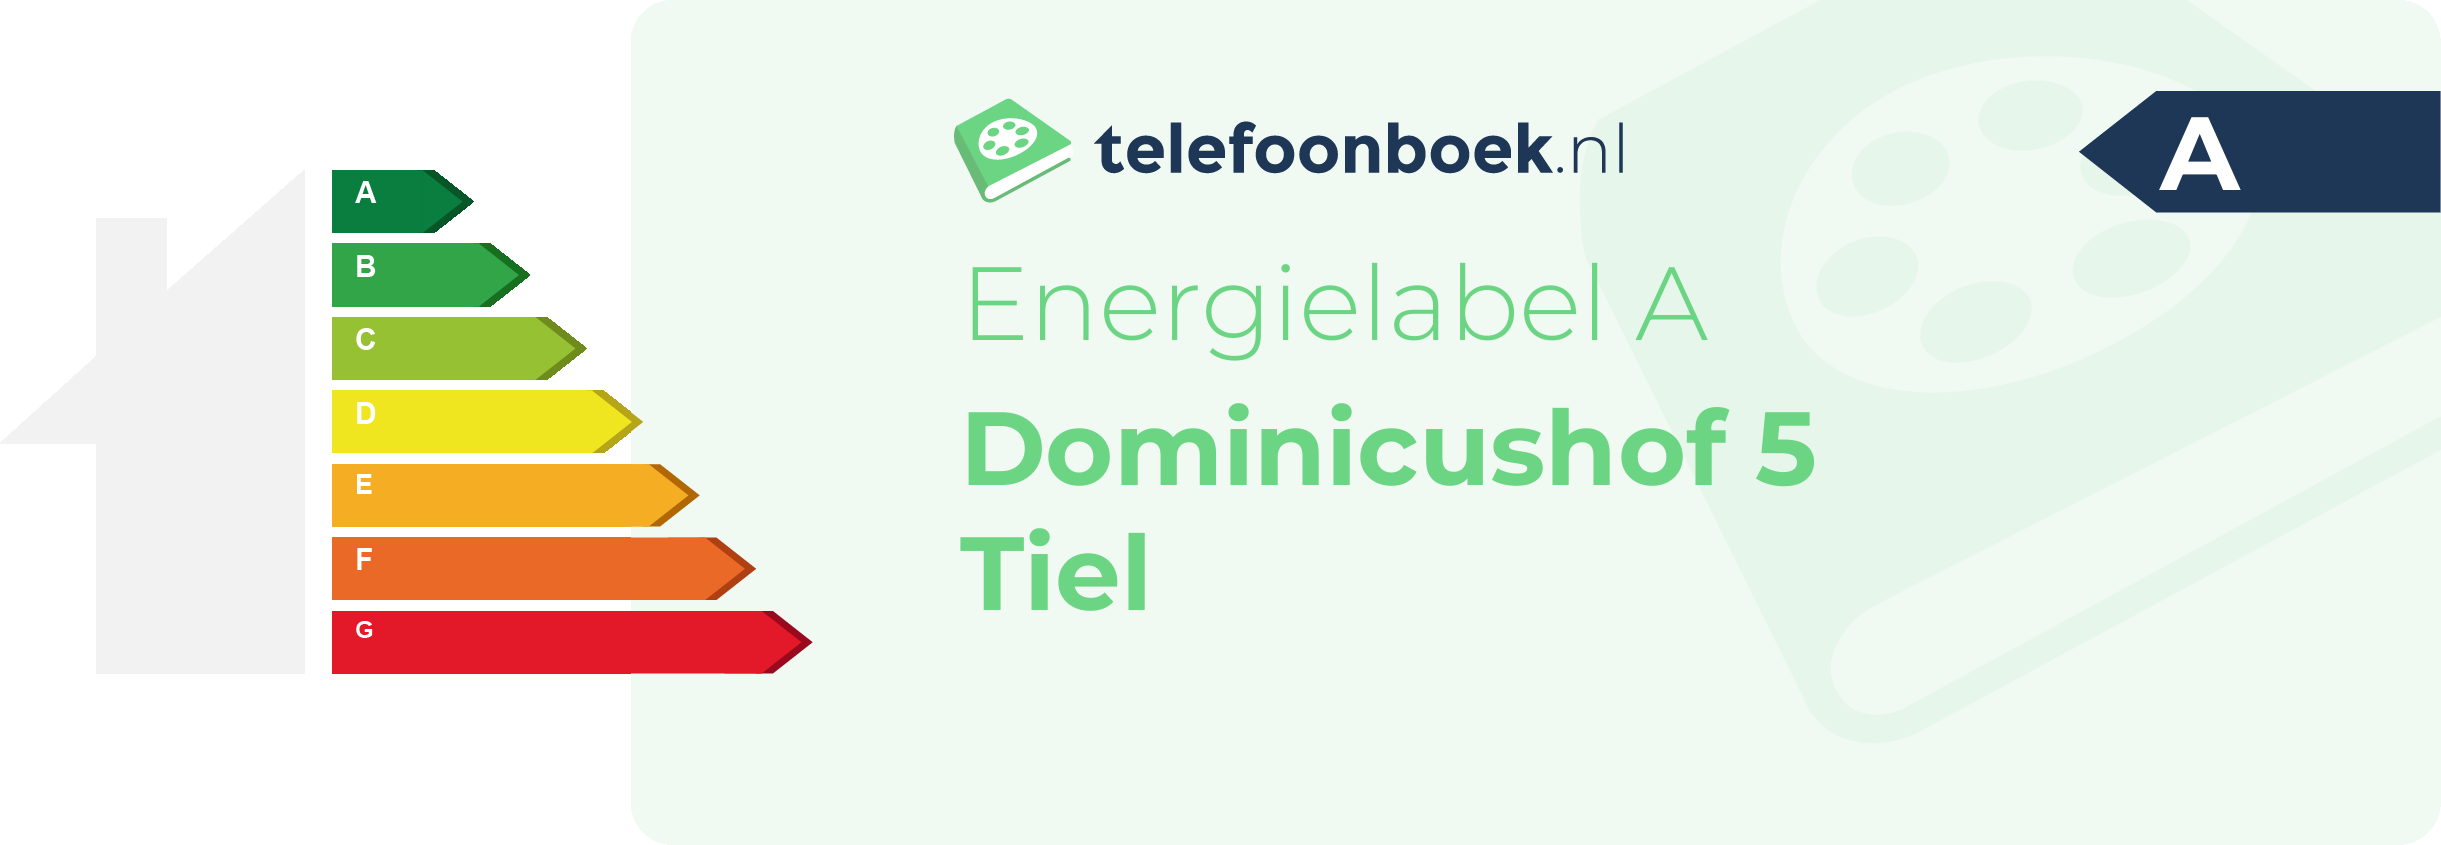 Energielabel Dominicushof 5 Tiel